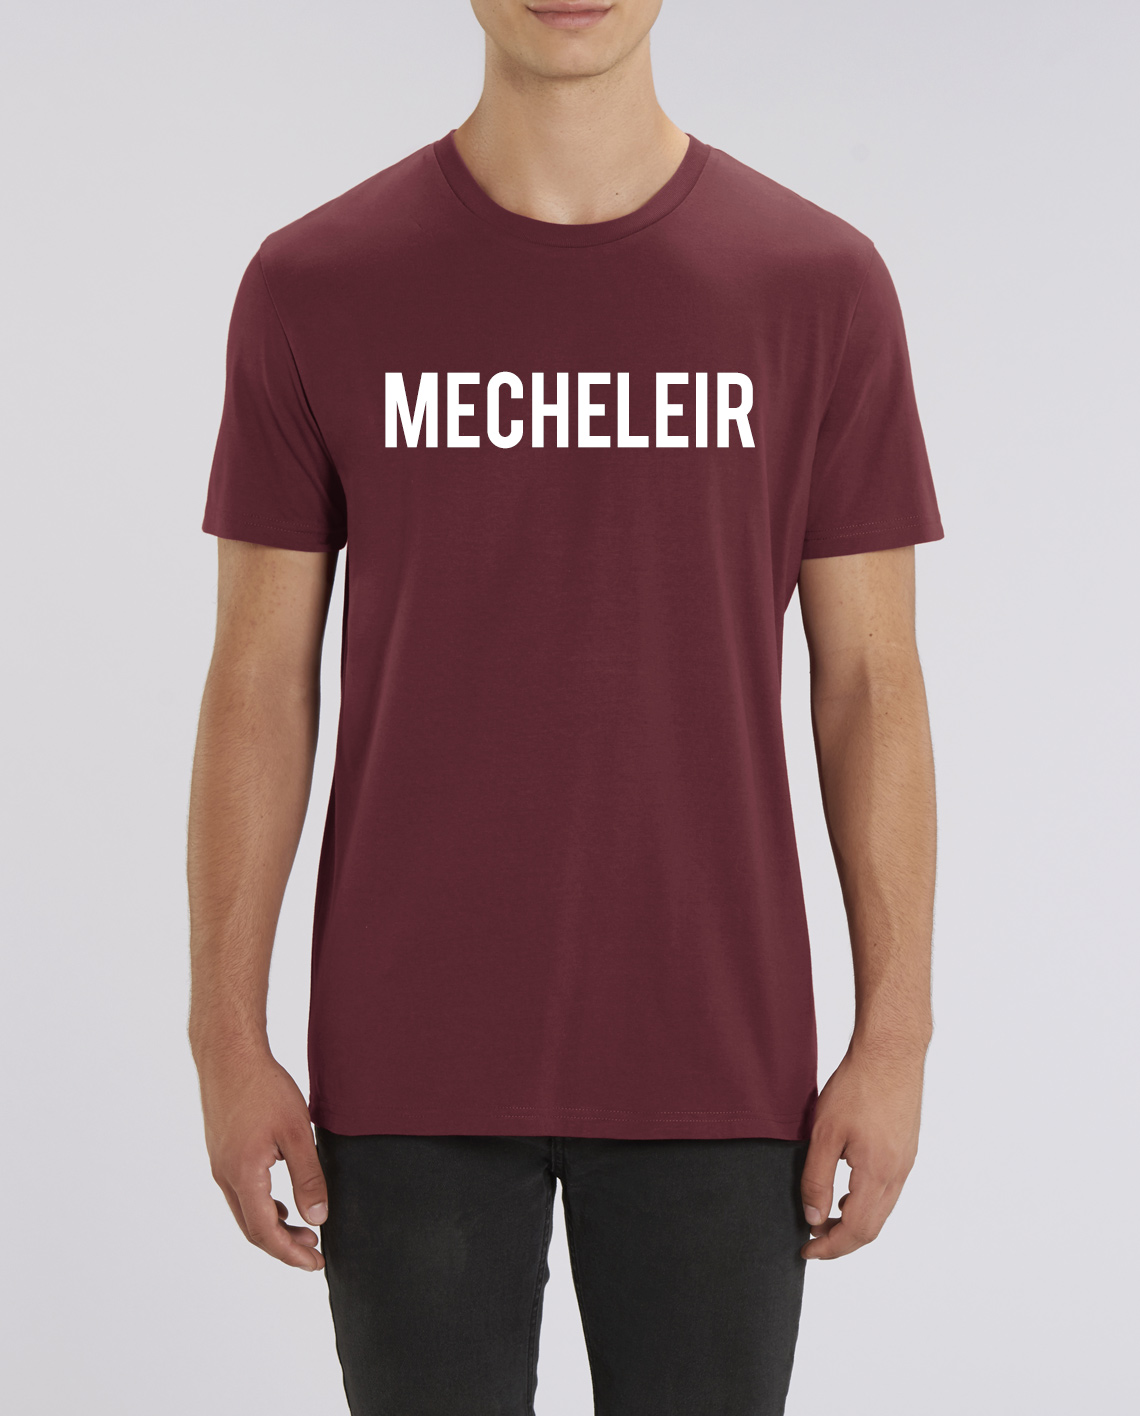 voorjaar Bourgeon Prestigieus T-Shirt Mecheleir online kopen bij Intdialect - Intdialect >>